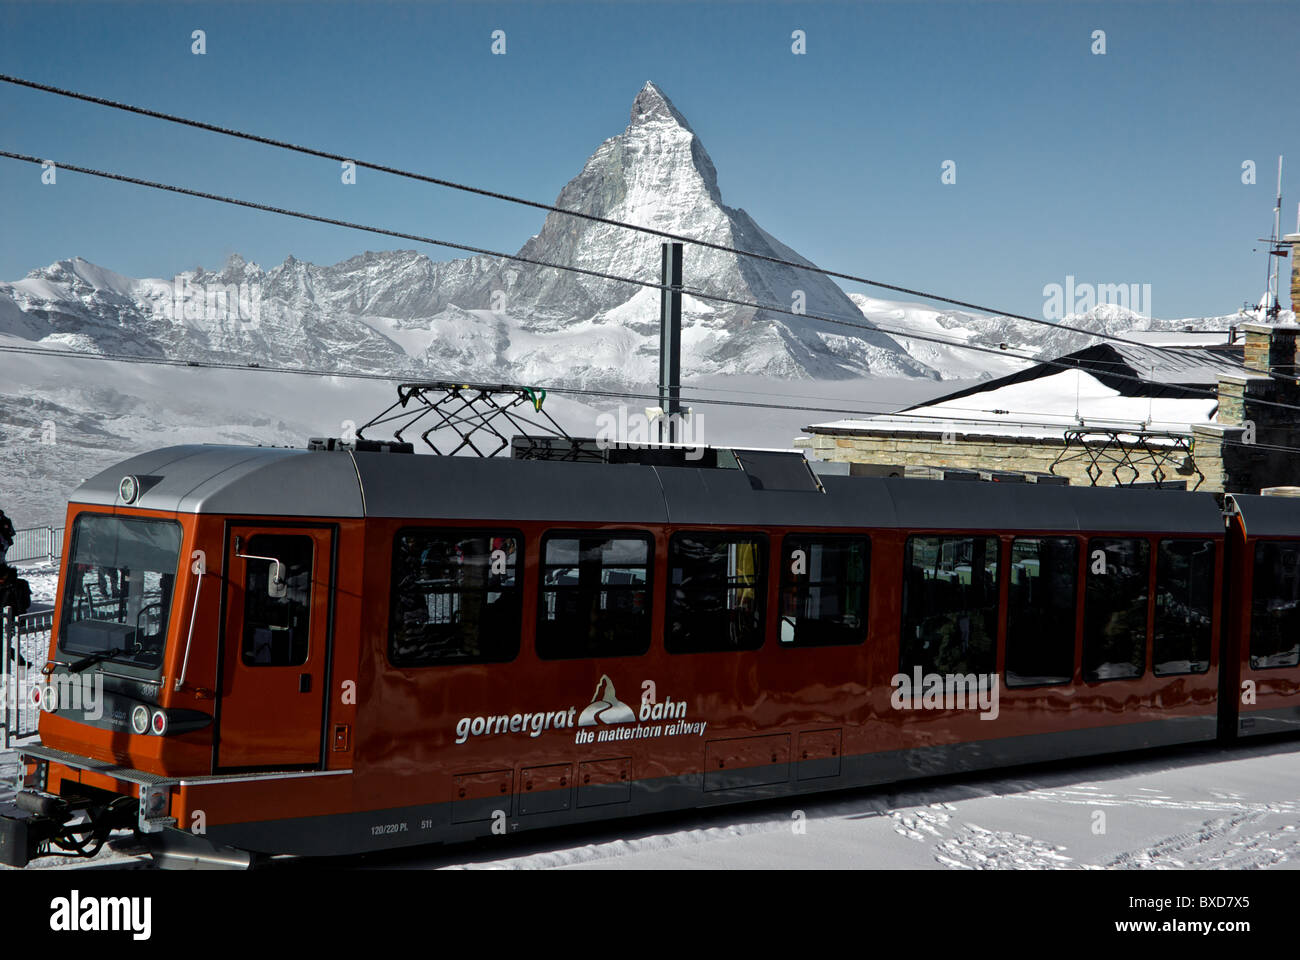 Gornergrat Bahn-Zahnrad-Bahn Bahnhof Blick auf das Matterhorn Zermatt  Switzerland Stockfotografie - Alamy